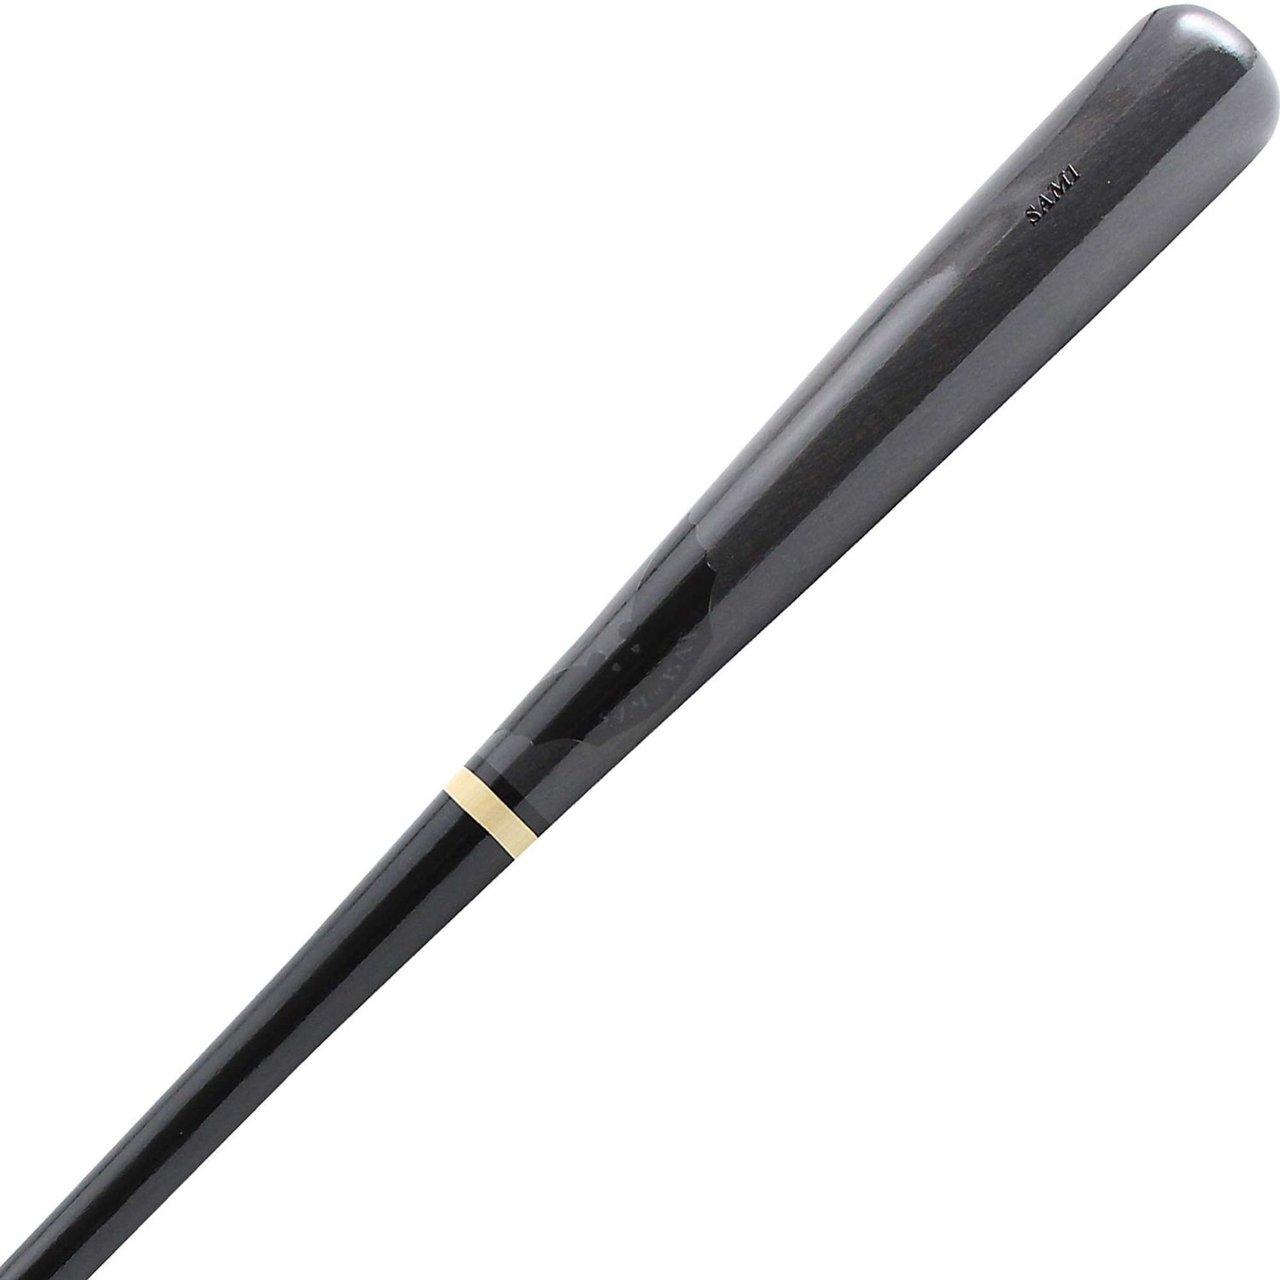 sam-bat-sam1-hardwood-maple-wood-baseball-bat-black-gray-32-inch SAM1-BKGY-32-INCH  B00PC1QIIA           